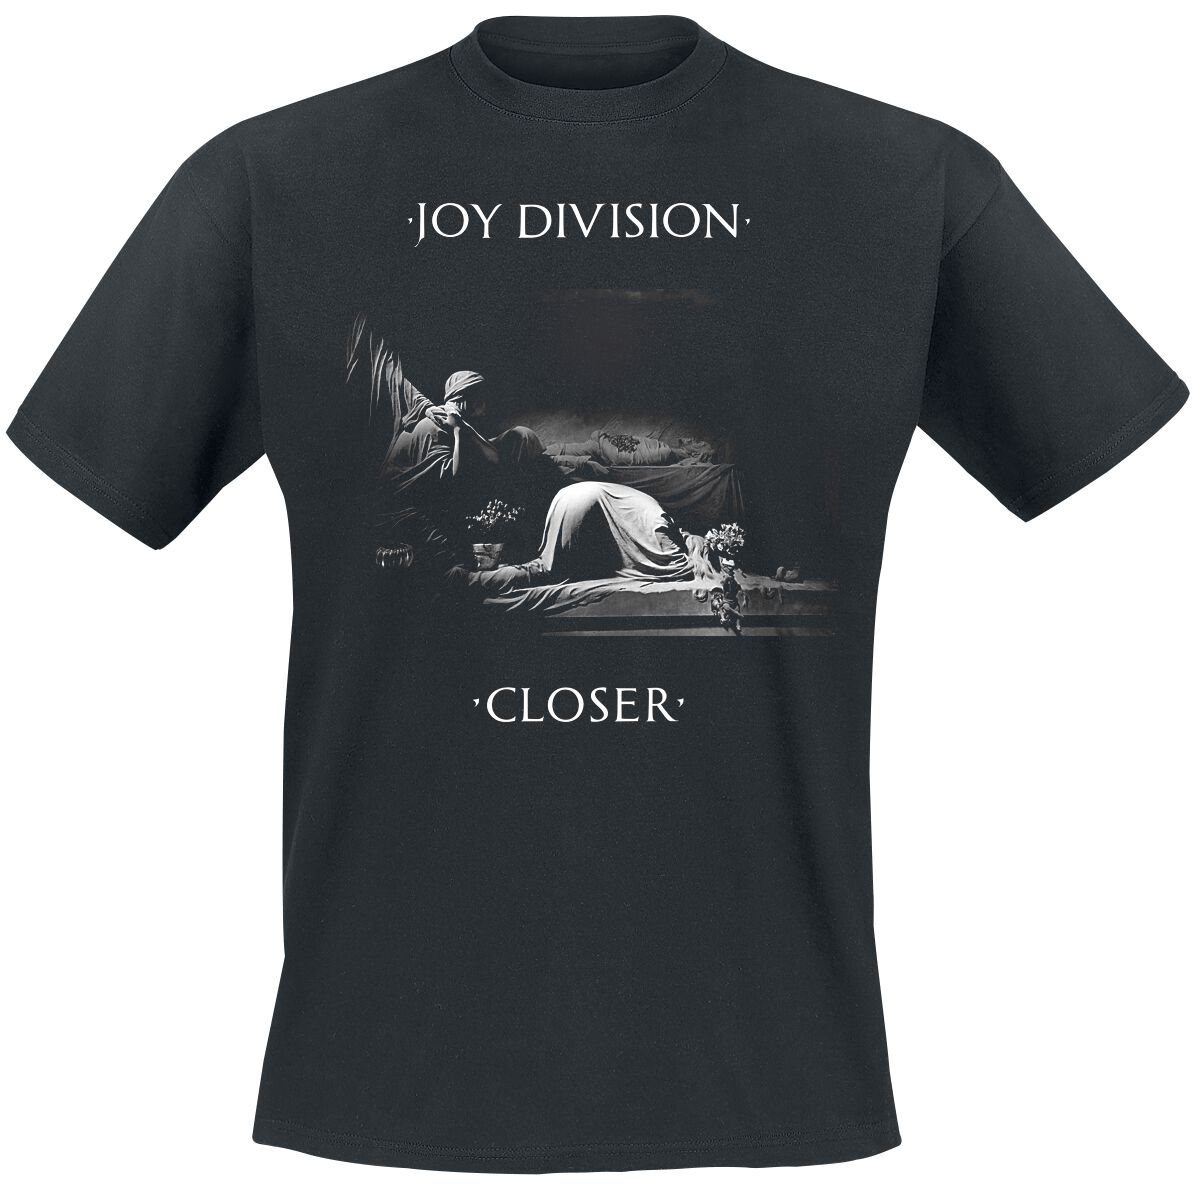 Joy Division T-Shirt - Classic Closer - S bis XXL - für Männer - Größe M - schwarz  - Lizenziertes Merchandise!